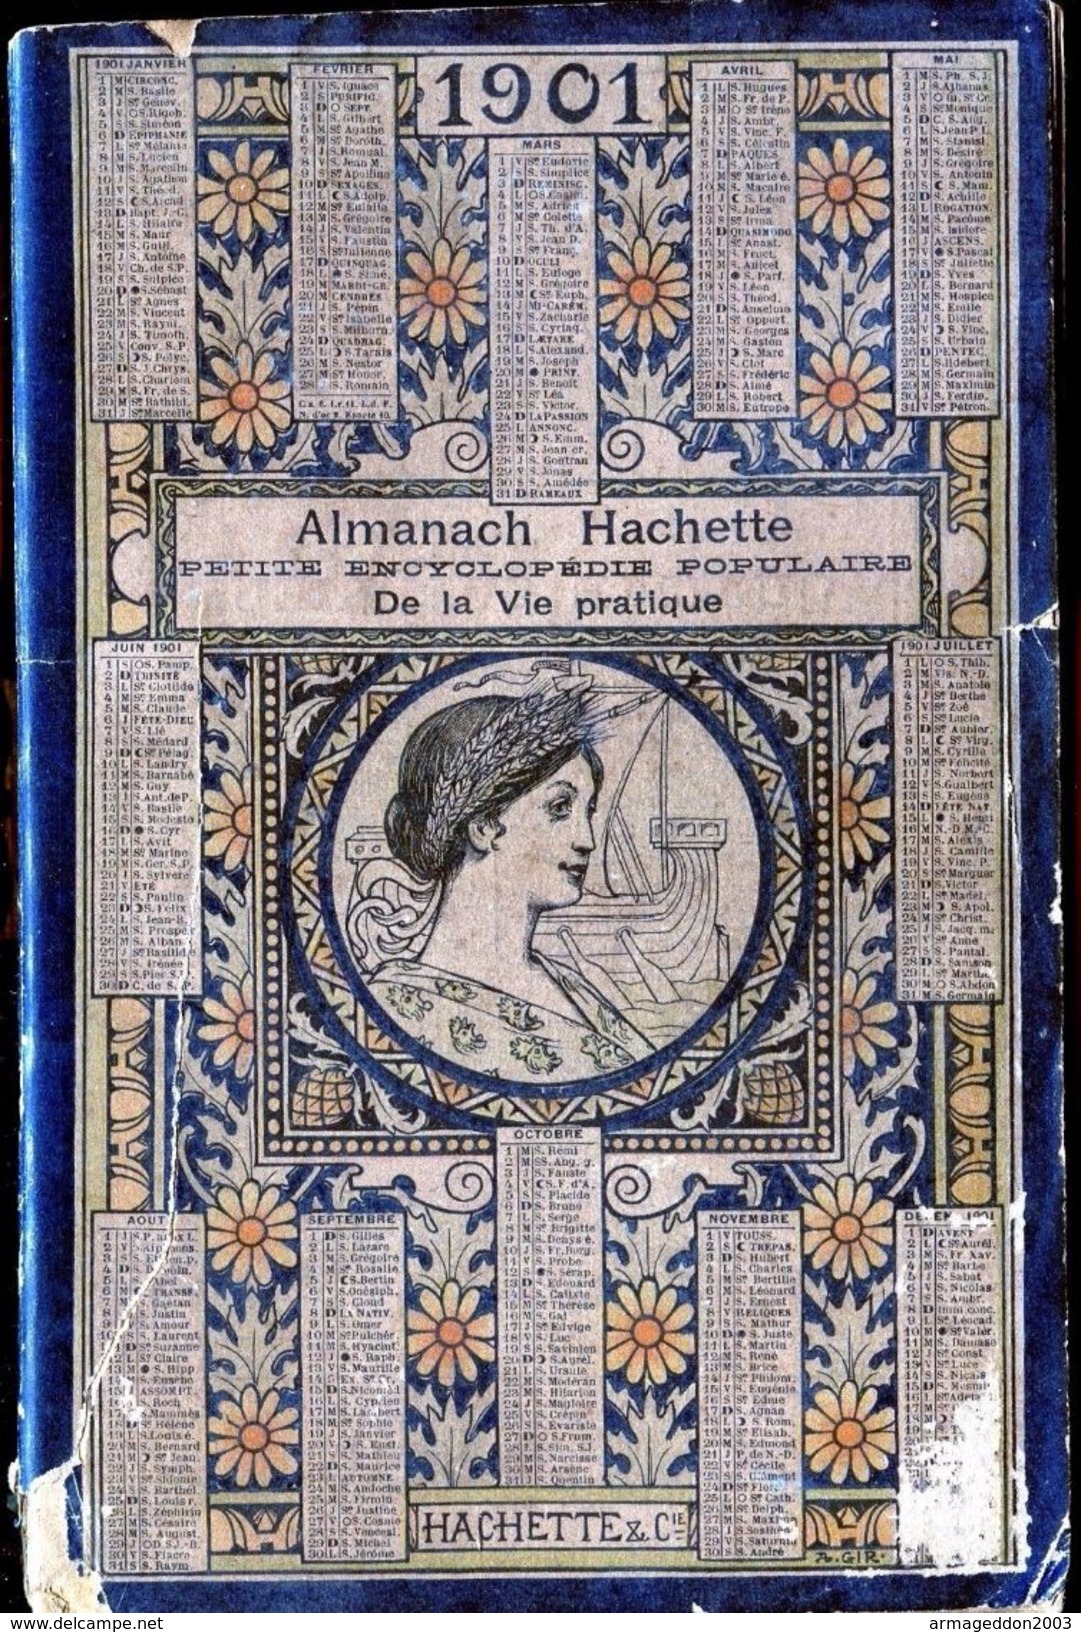 ALMANACH HACHETTE - 1901 Petite Encyclopédie Populaire De La Vie Pratique - Tamaño Grande : 1901-20